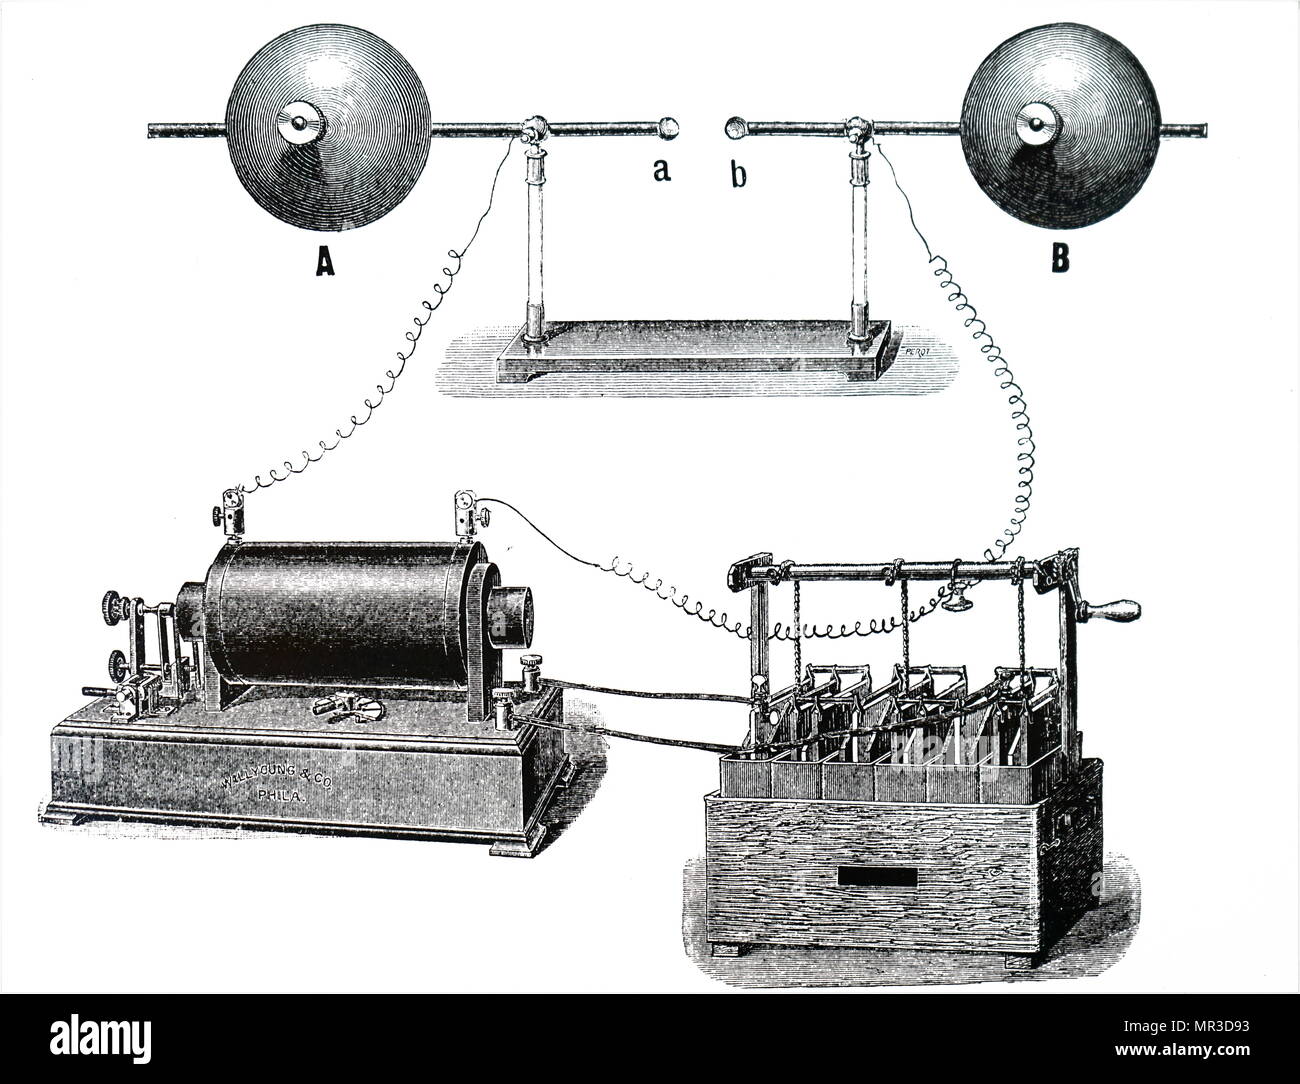 Illustration de l'oscillateur de Heinrich Hertz et reflétant de feuilles de  métal pour montrer les chemins d'aller et retour des ondes  électromagnétiques (radio). Heinrich Hertz (1857-1894), un physicien  allemand qui a été